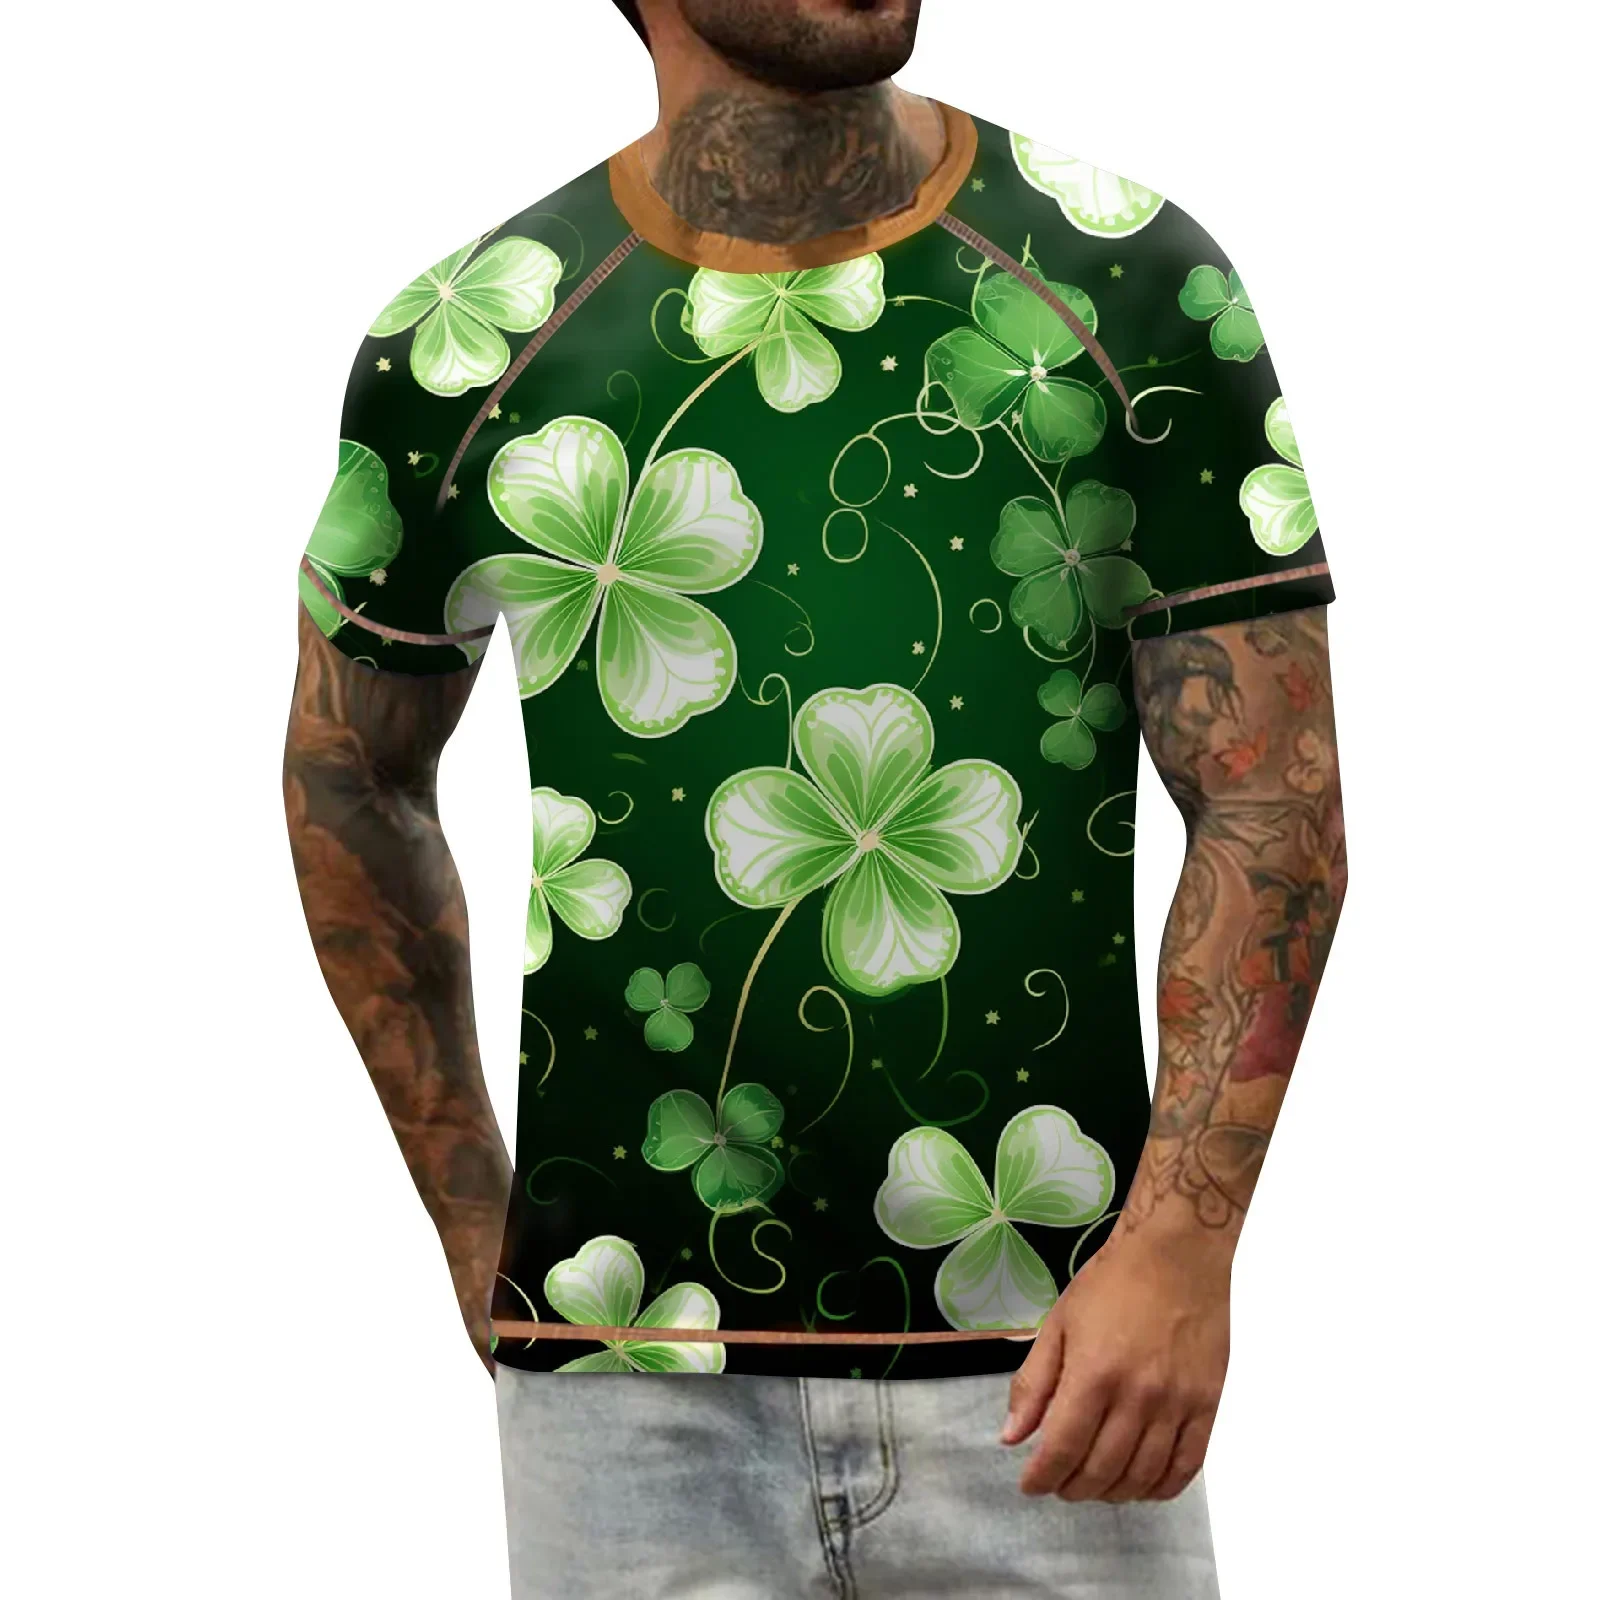 

Ирландский шамрок День Святого Патрика ирландский Клевер футболка подарок идея мода классический стиль футболка унисекс Топы с принтом Ropa Homb